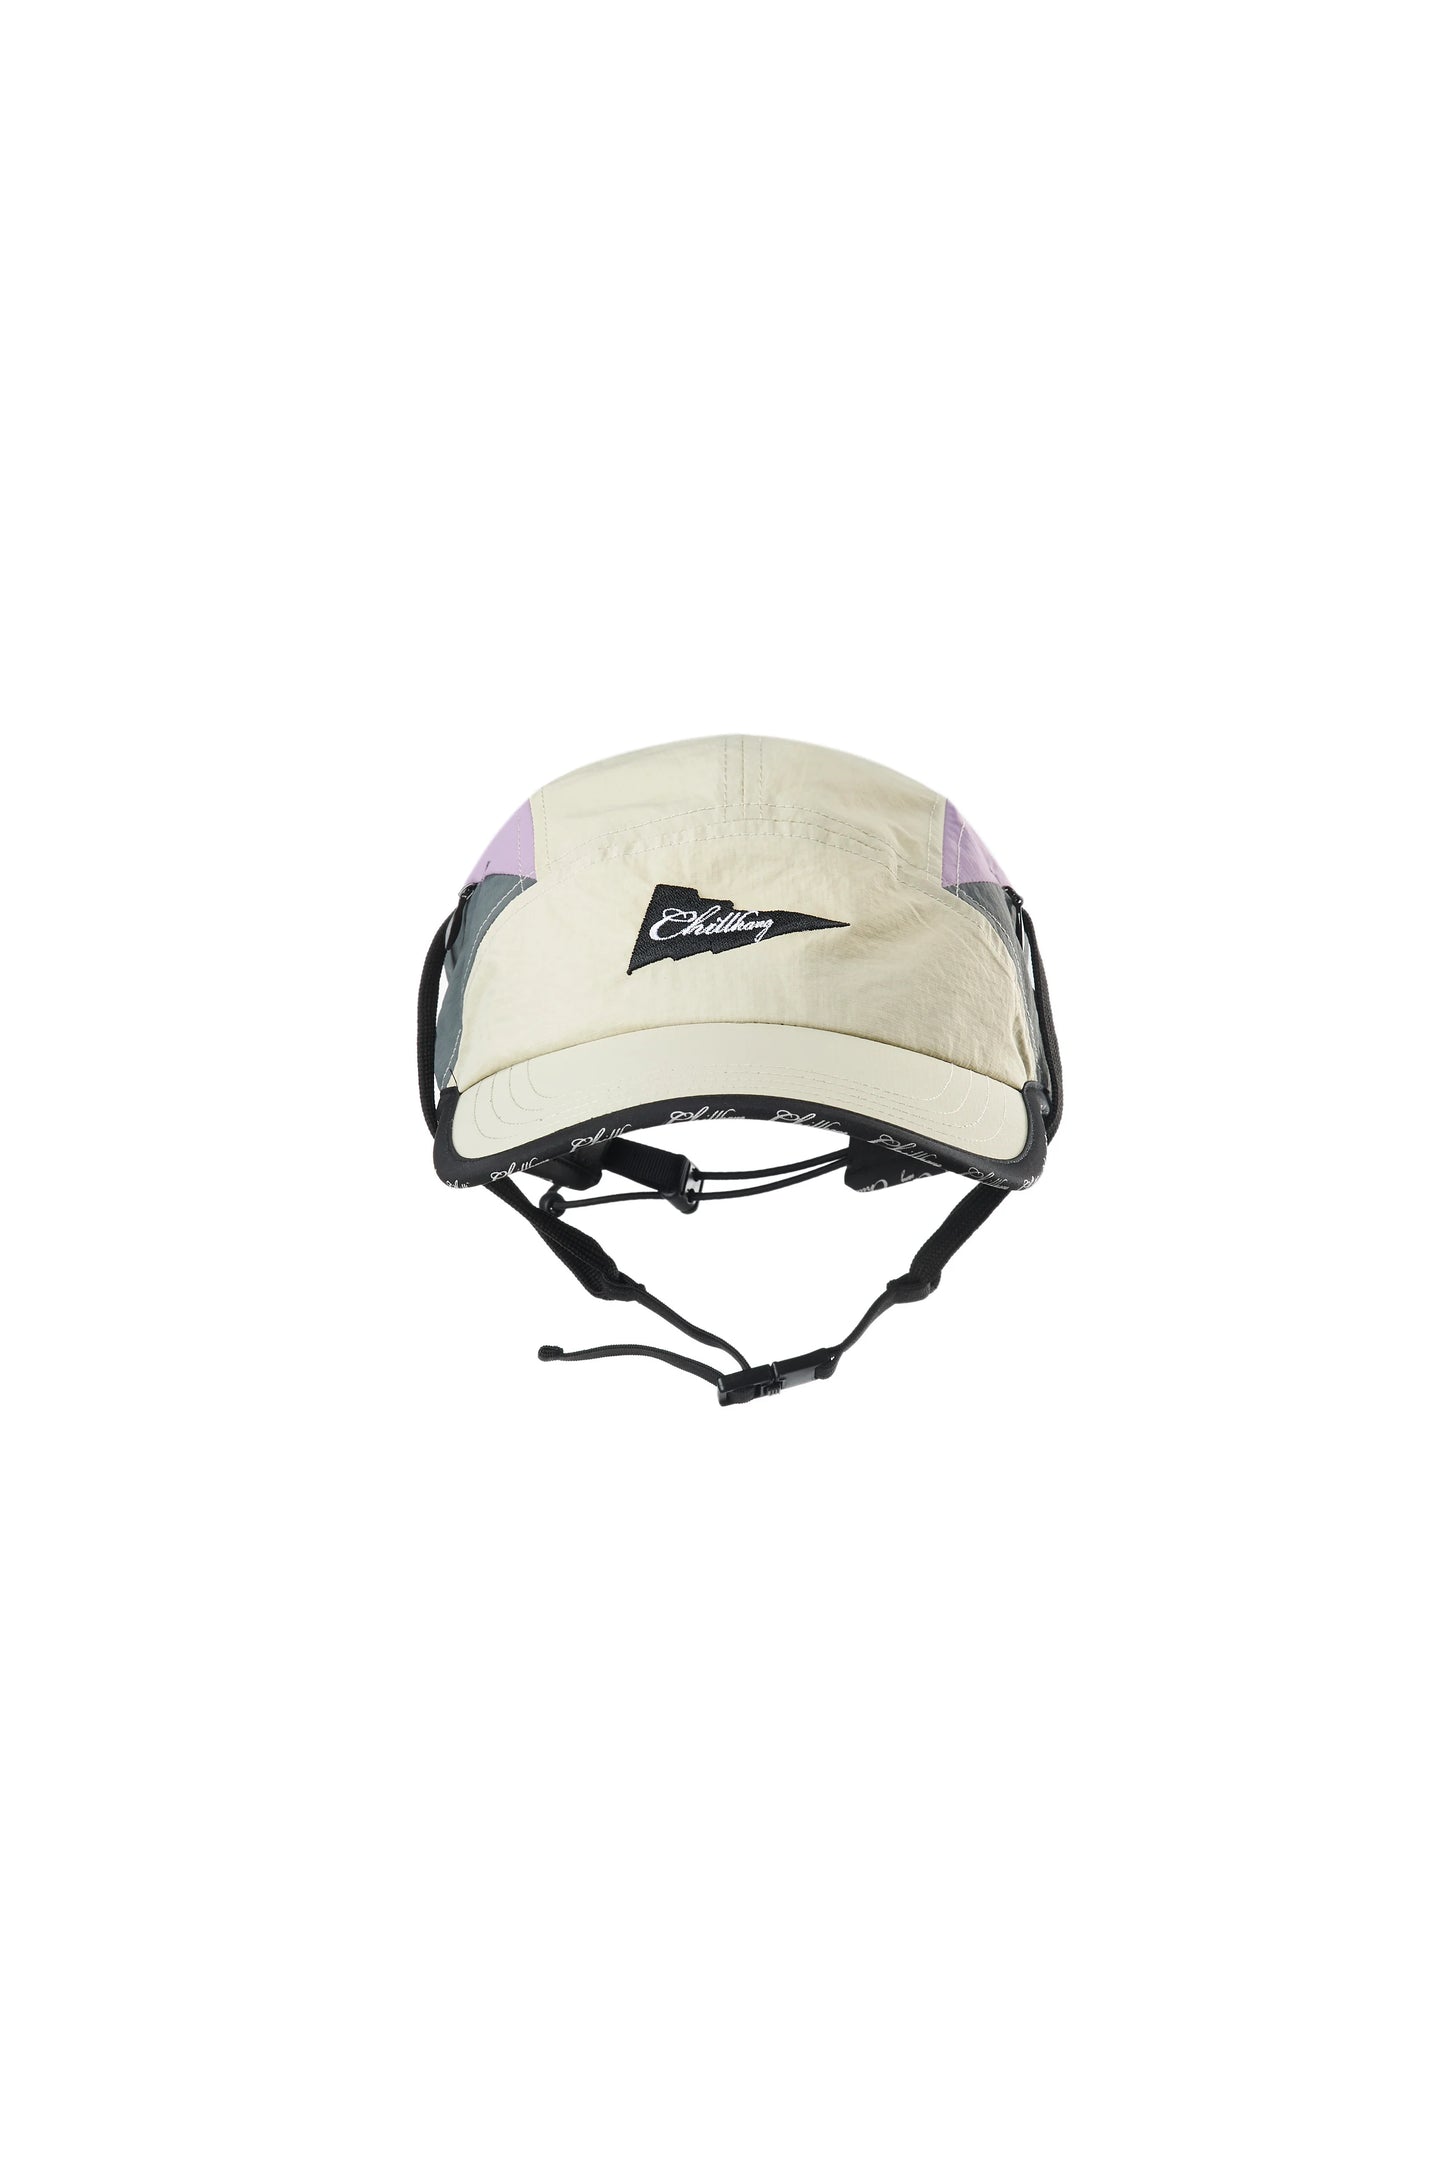 CHILLHANG 拼色衝浪棒球帽(紫 x 灰)